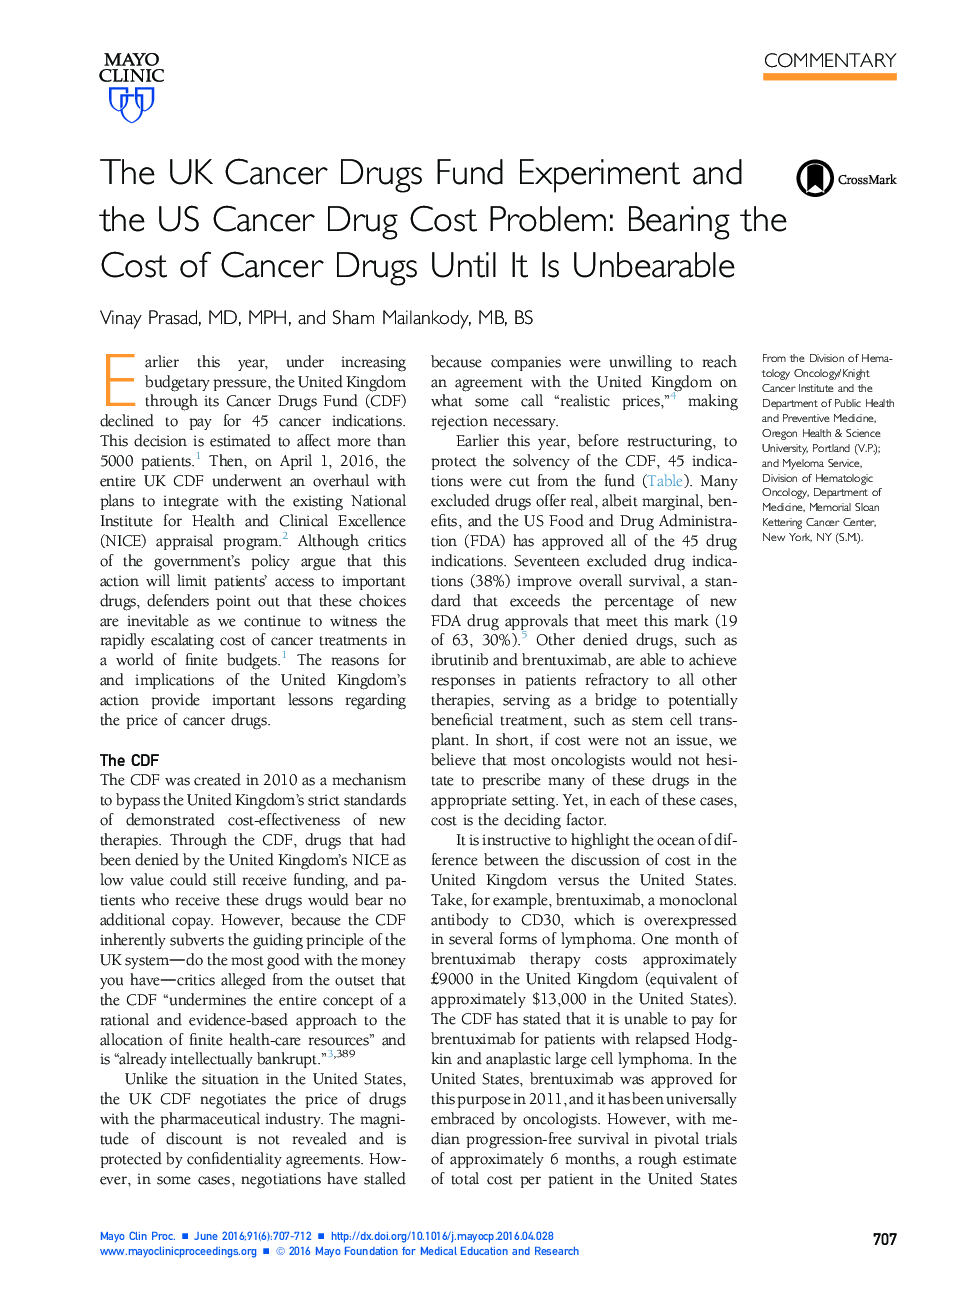 آزمایش سرطان مواد مخدر بریتانیا و مشکل هزینه های سرطان مواد مخدر ایالات متحده 